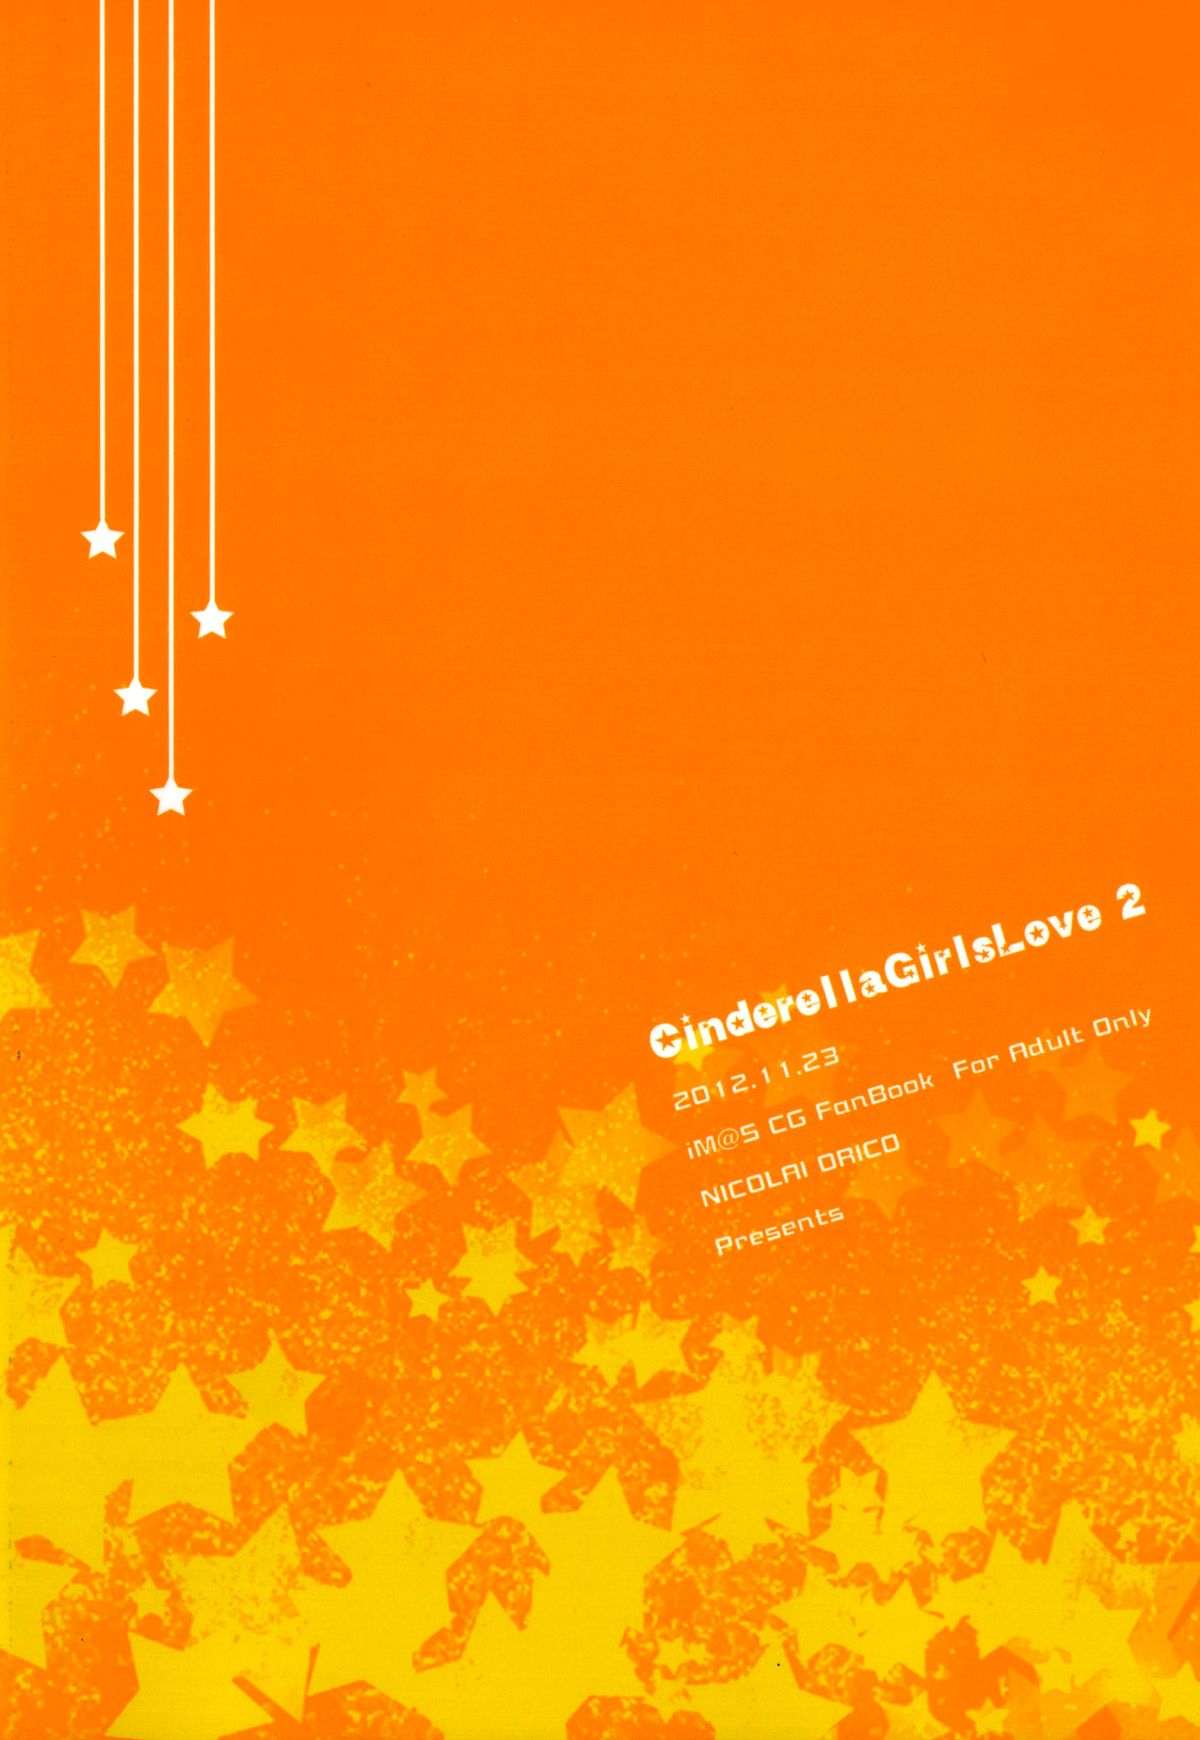 (iDOL SURVIVAL3) [NICOLAI (オリコ)] Cinderella Girls Love 2 (アイドルマスター シンデレラガールズ)